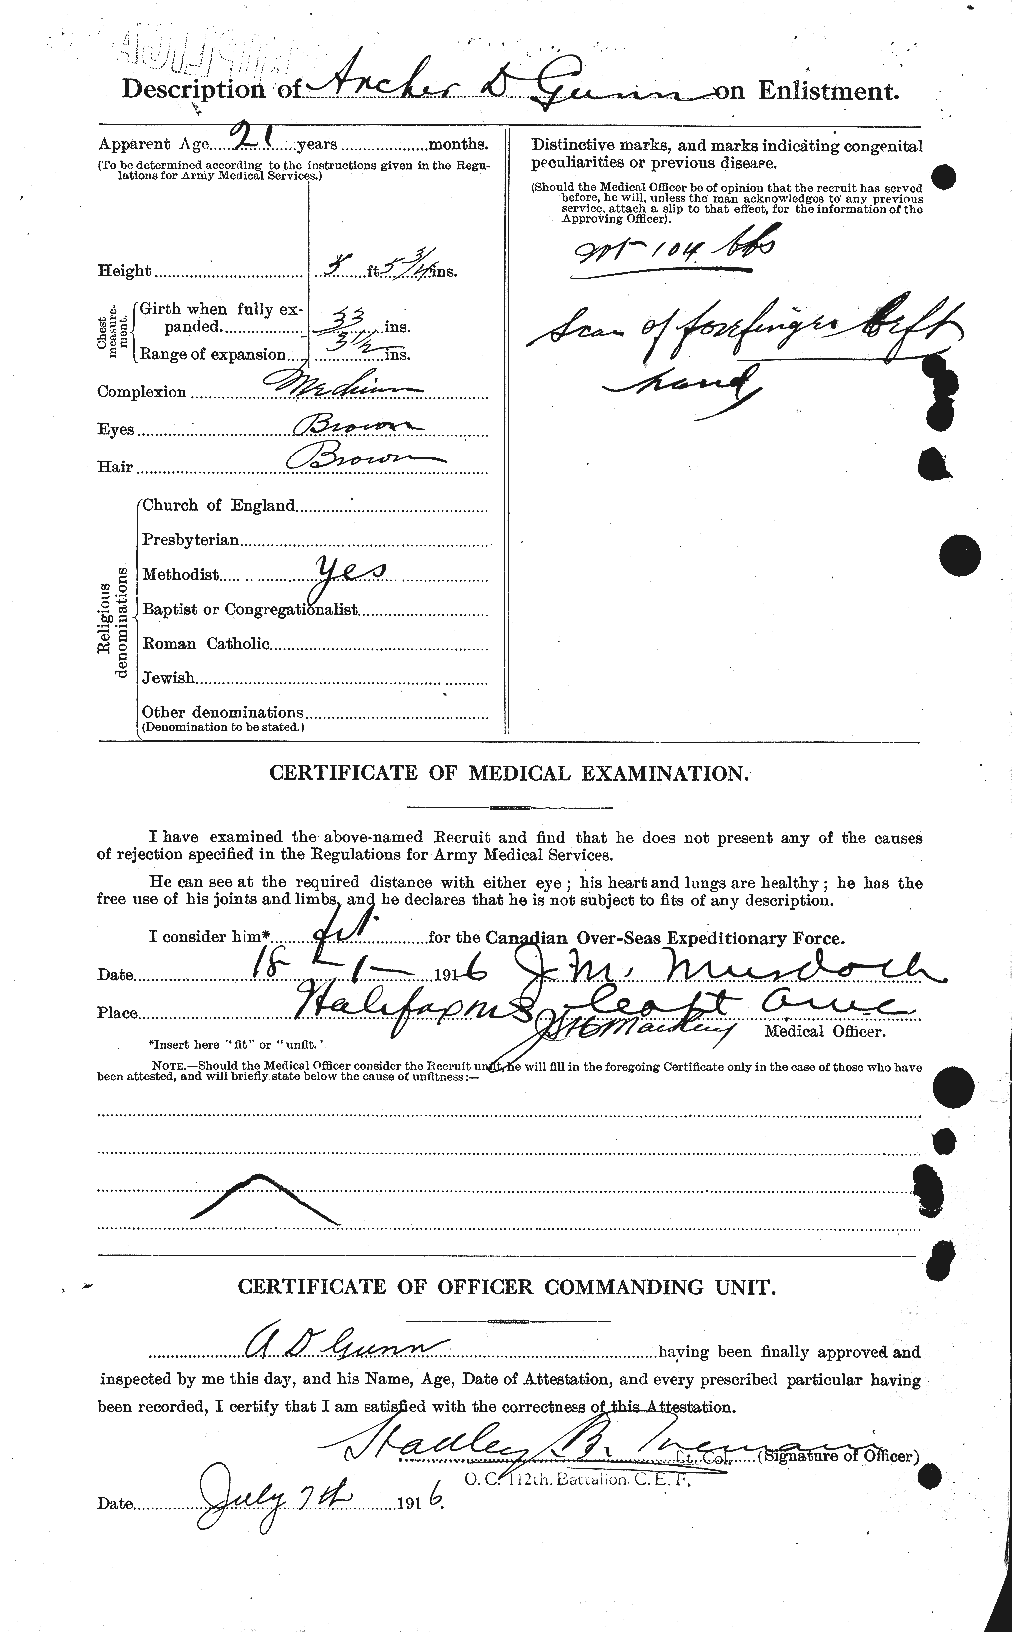 Dossiers du Personnel de la Première Guerre mondiale - CEC 368000b